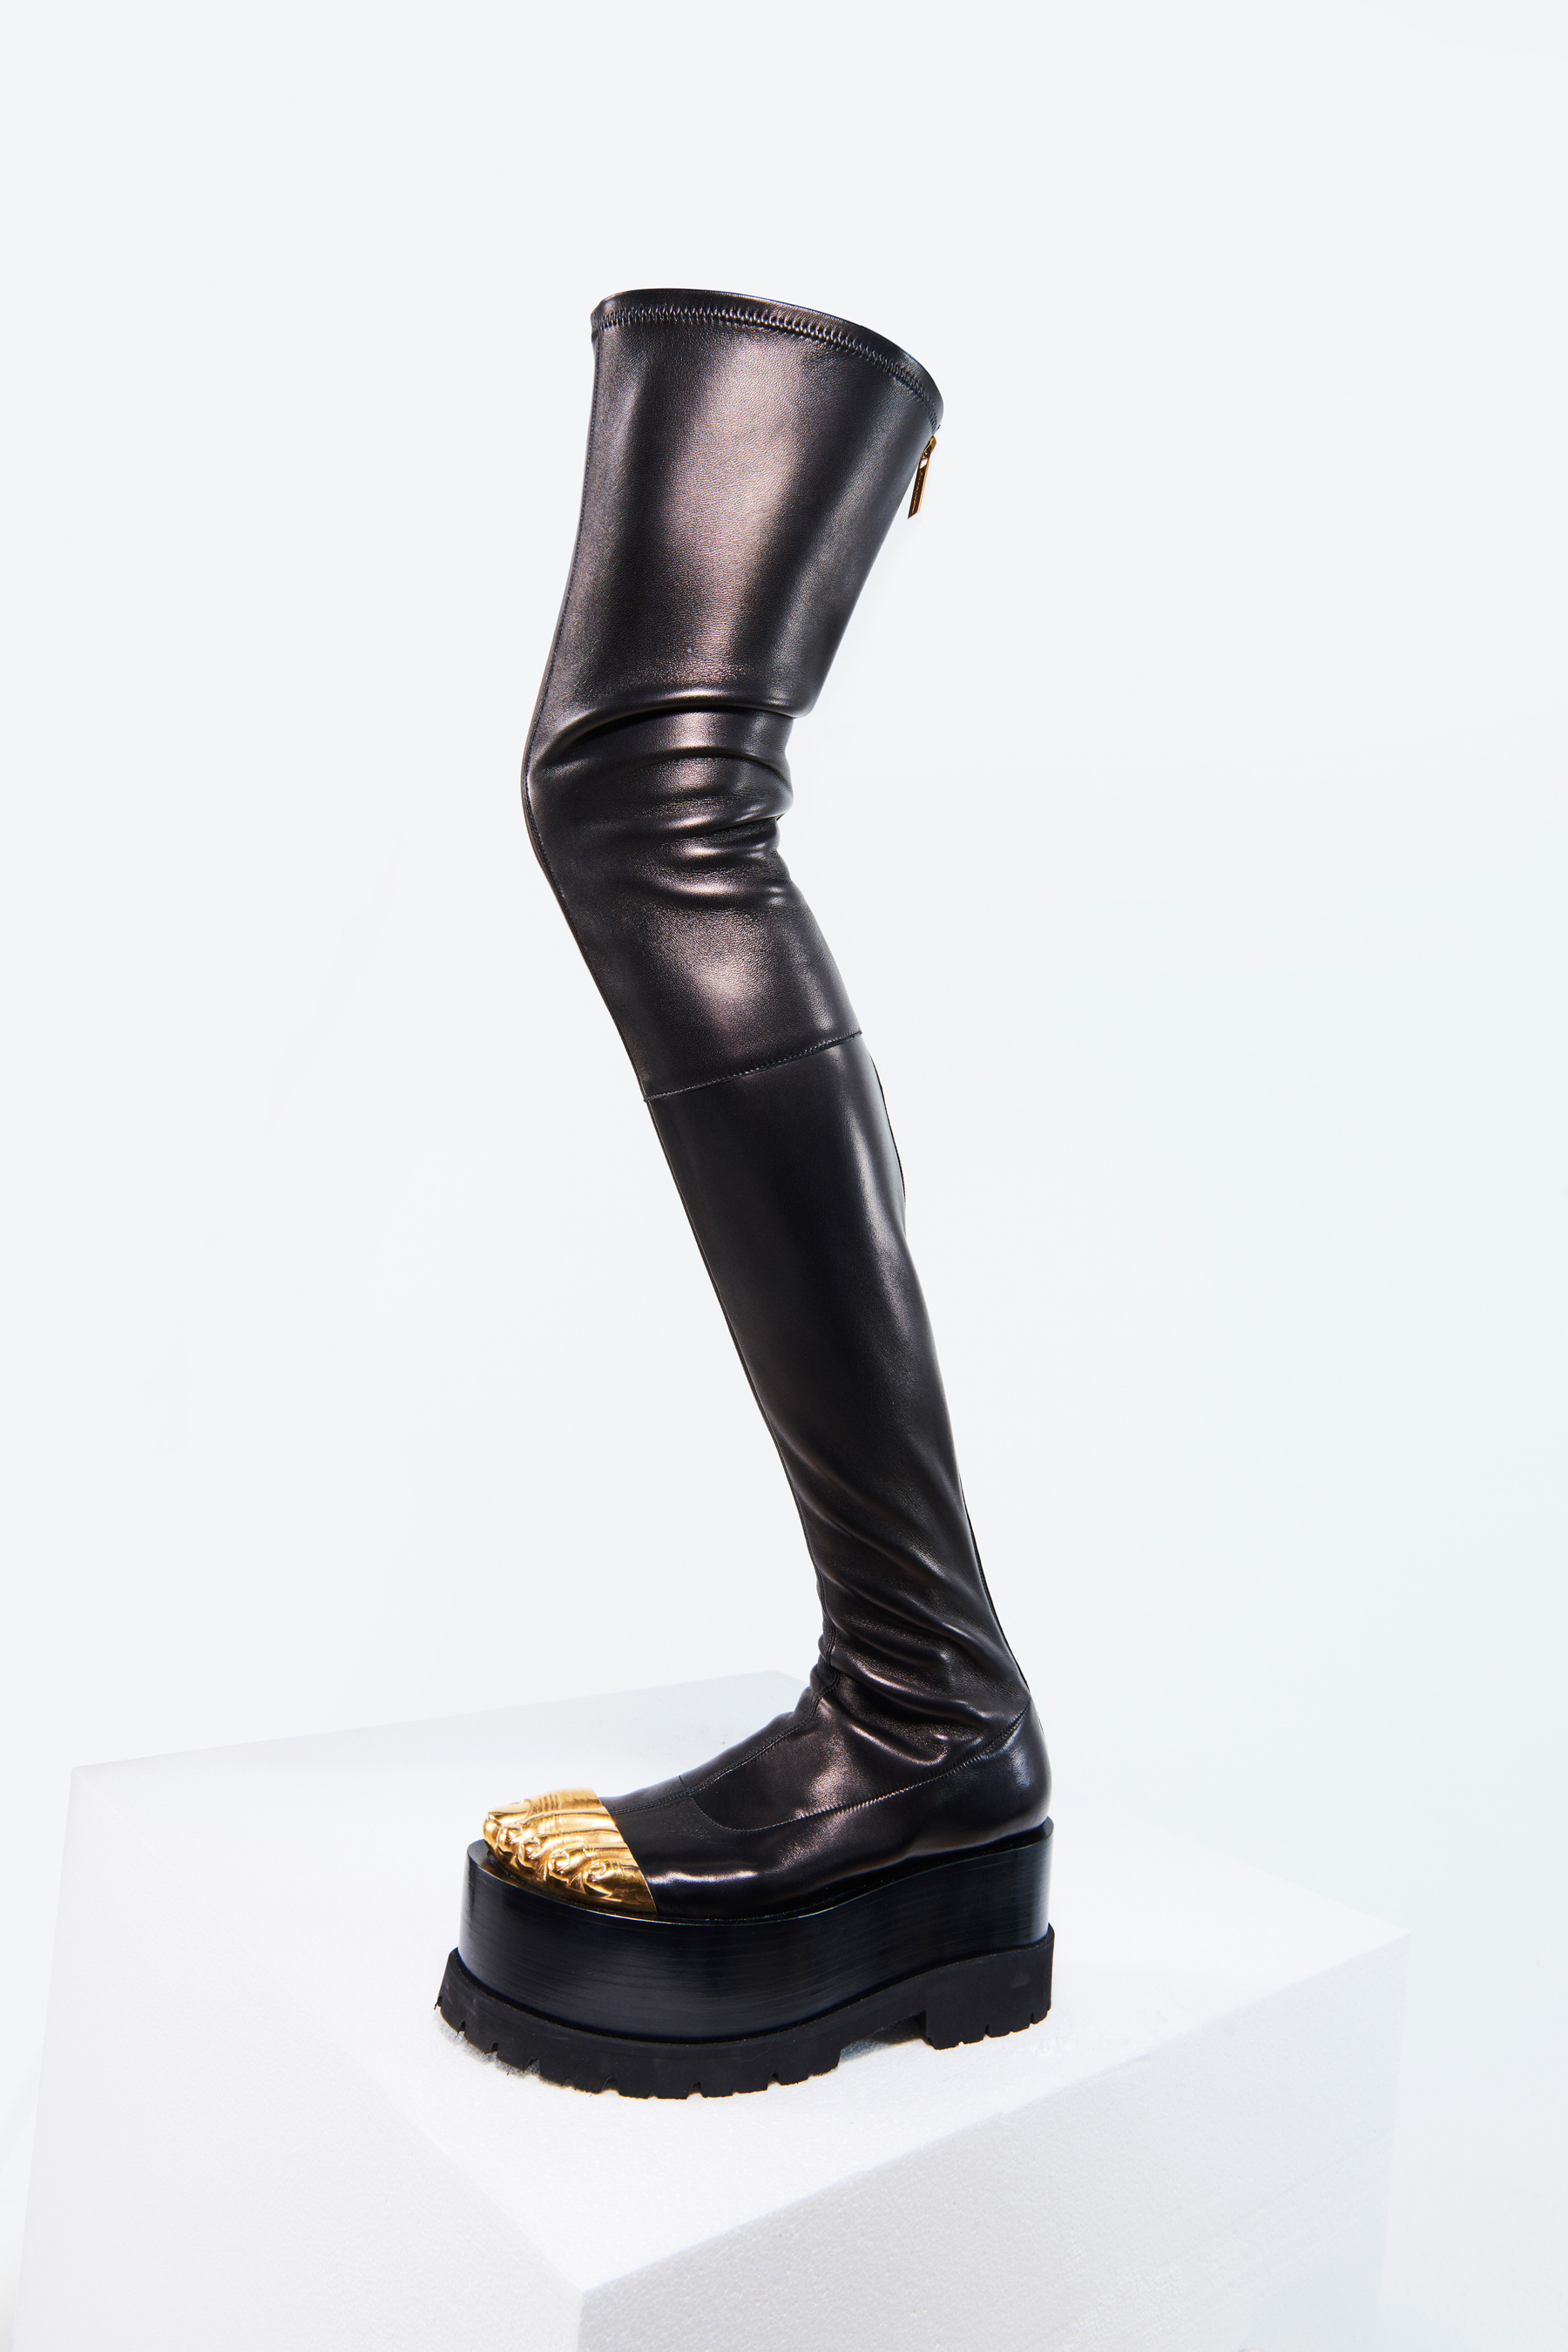 Schiaparelli Spring 2021 Couture Details